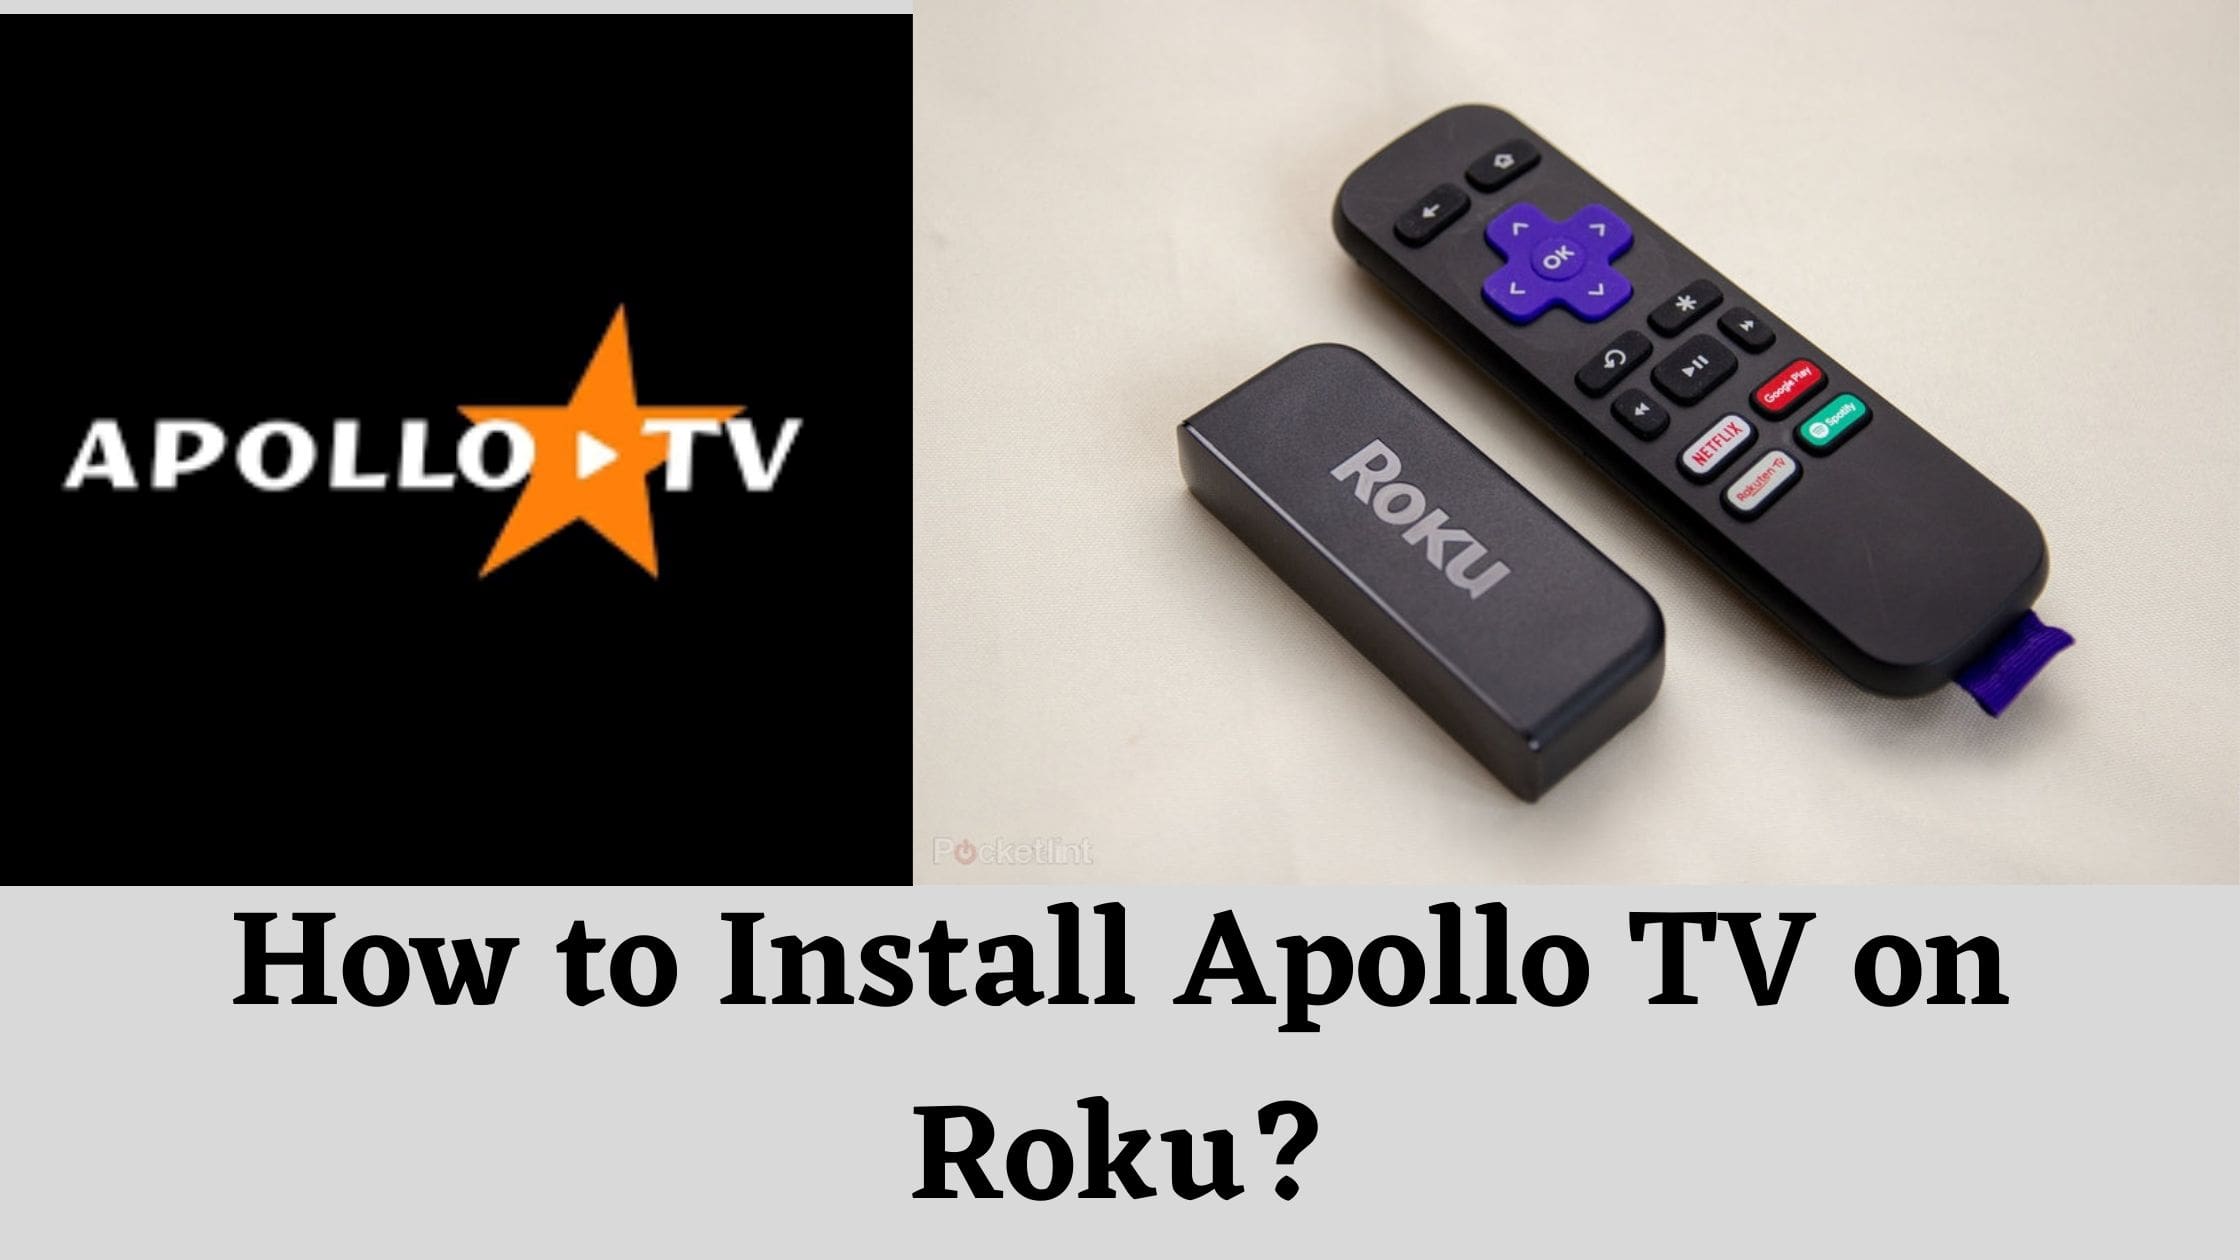 How to Install Apollo TV on Roku?